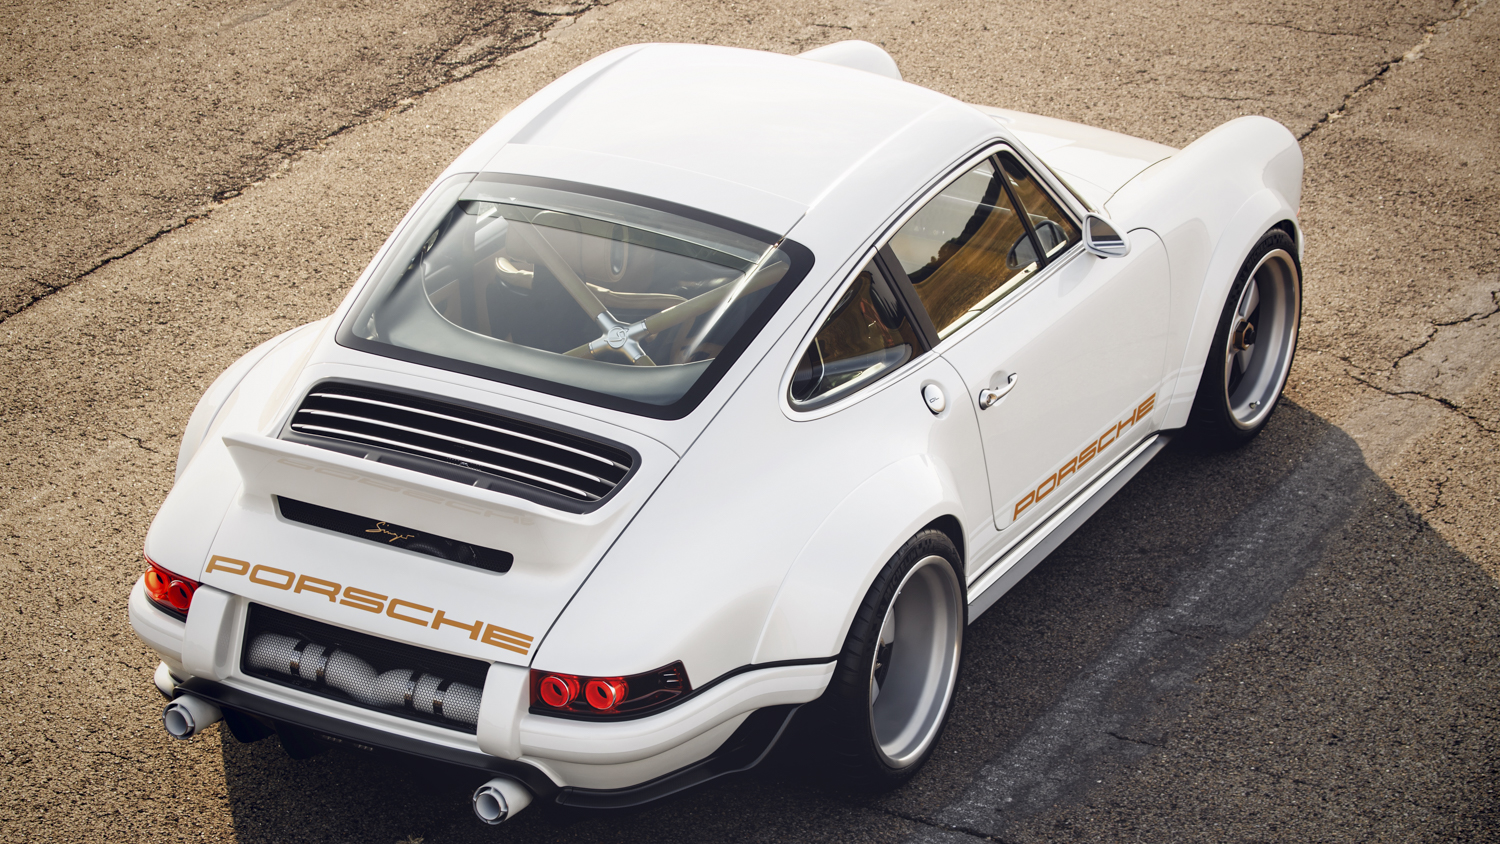 1989 Porsche 911 Reimagined by Singer Vehicle Design